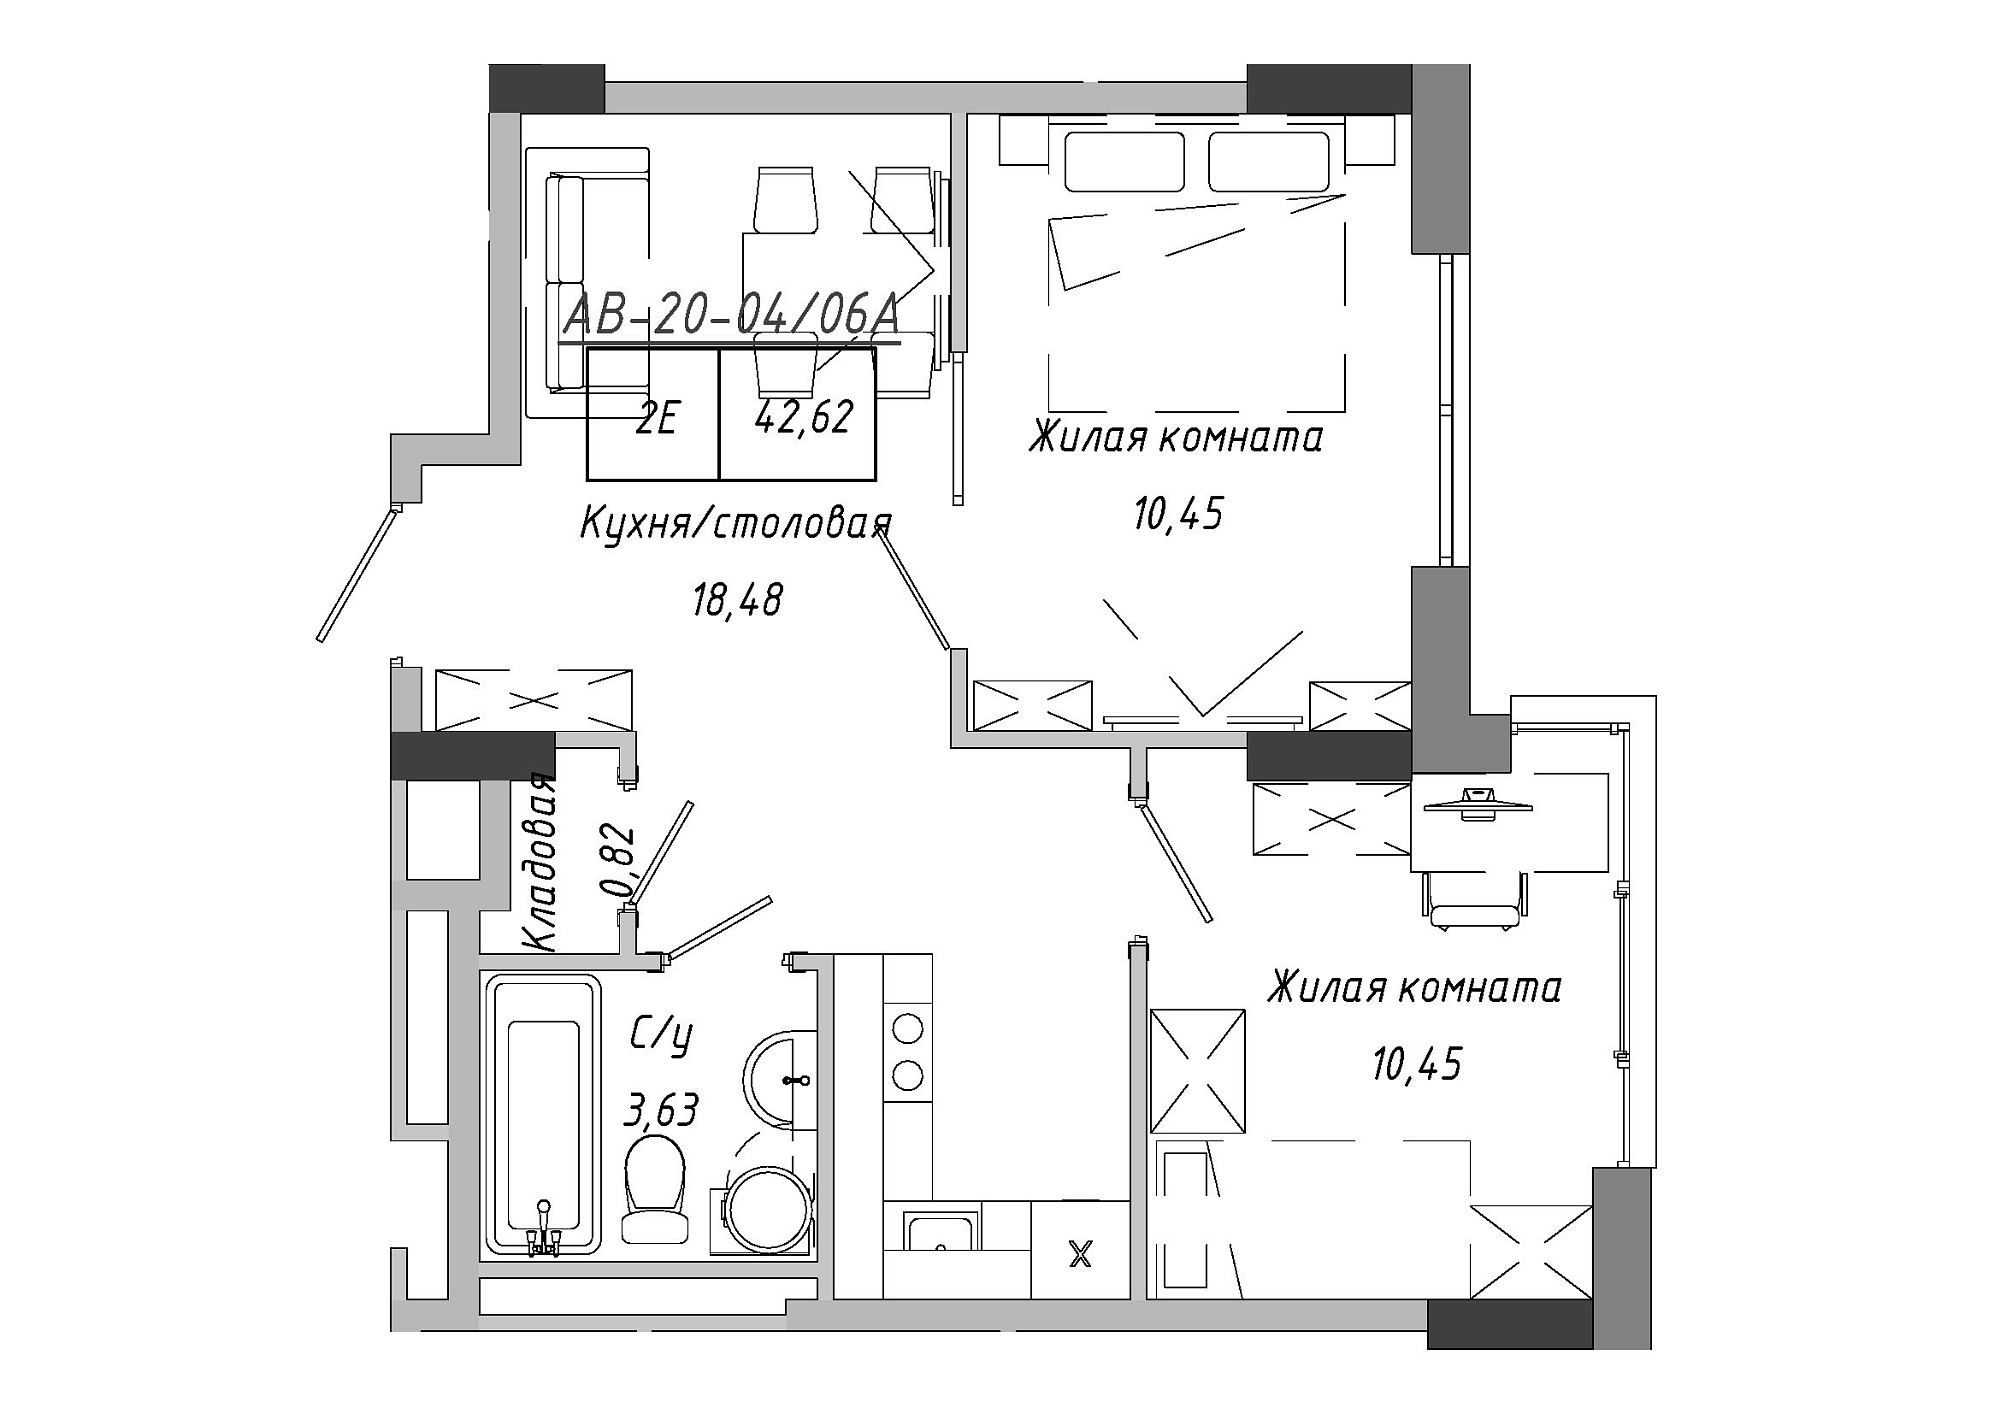 Планировка 2-к квартира площей 42.62м2, AB-20-04/0006а.